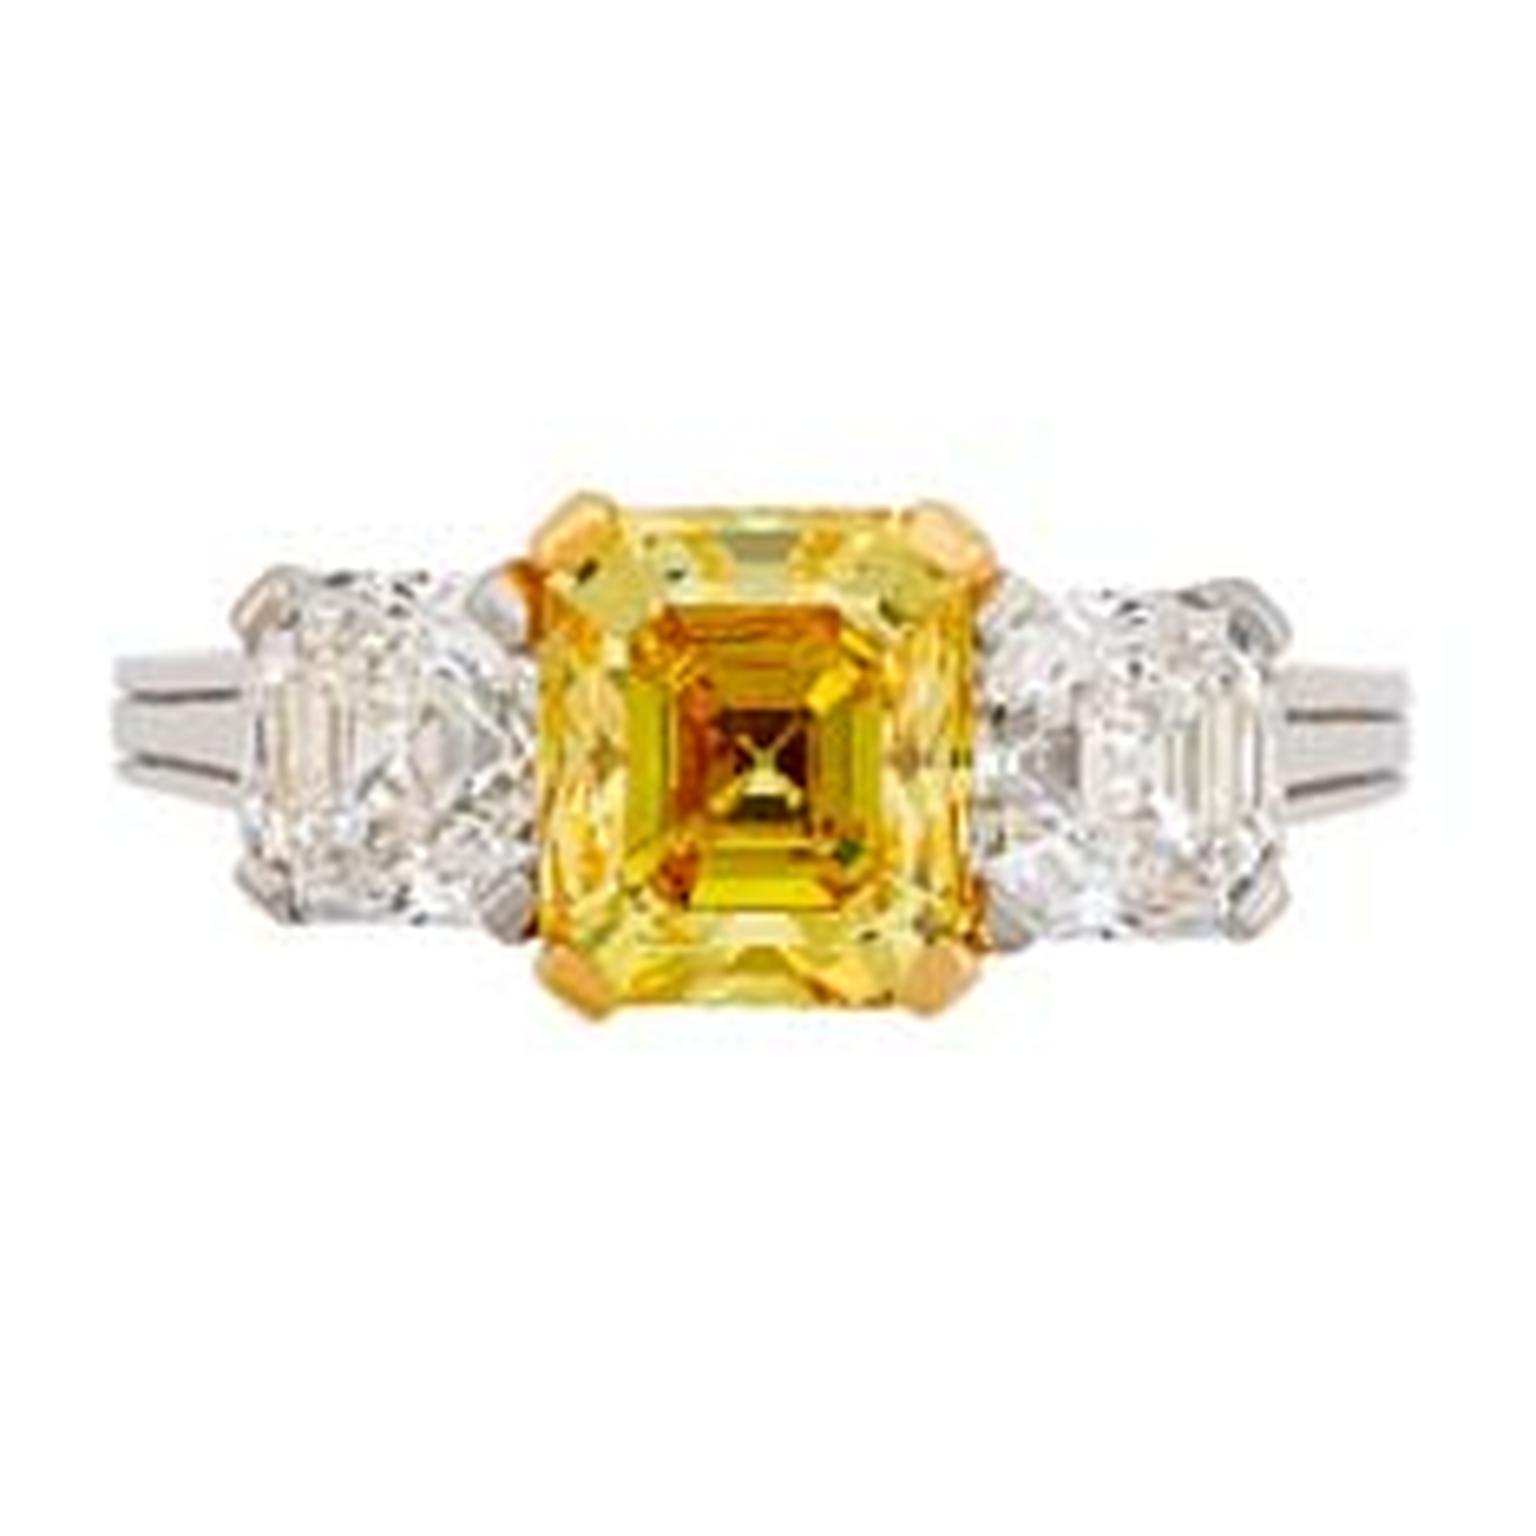 Hancocks Three stone yellow and white diamond engagement ring